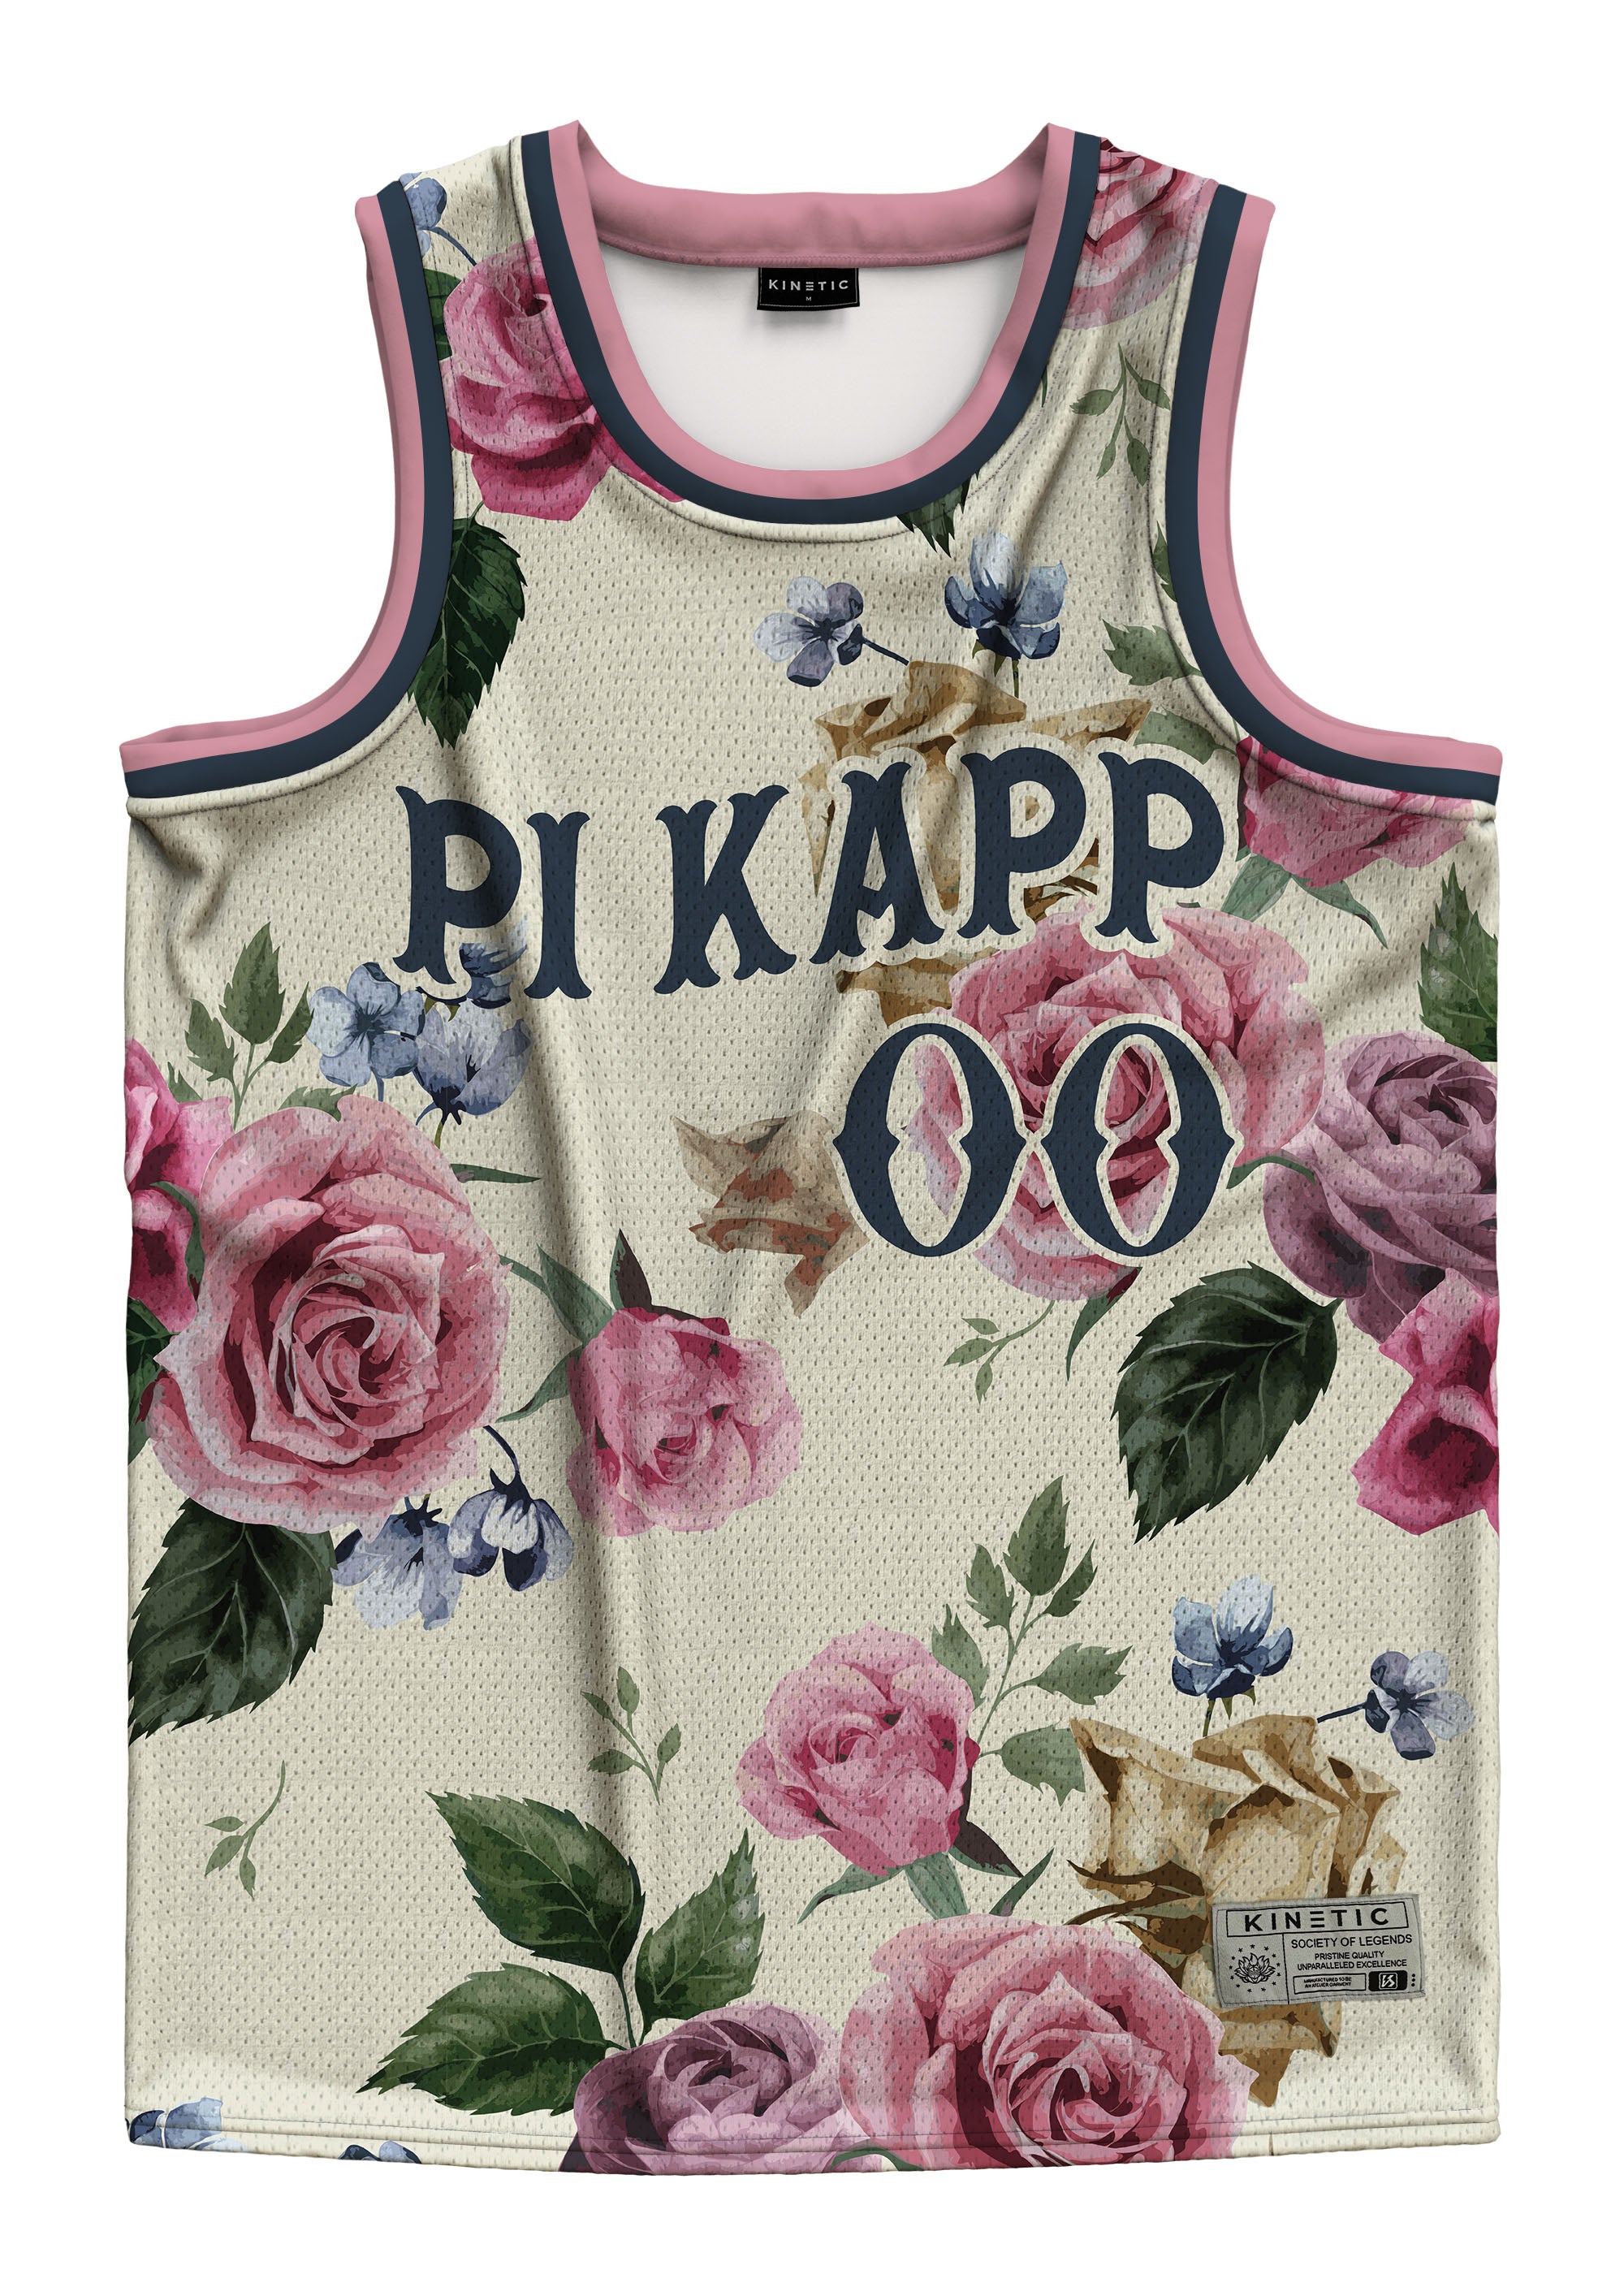 Pi Kappa Phi - Chicago Basketball Jersey